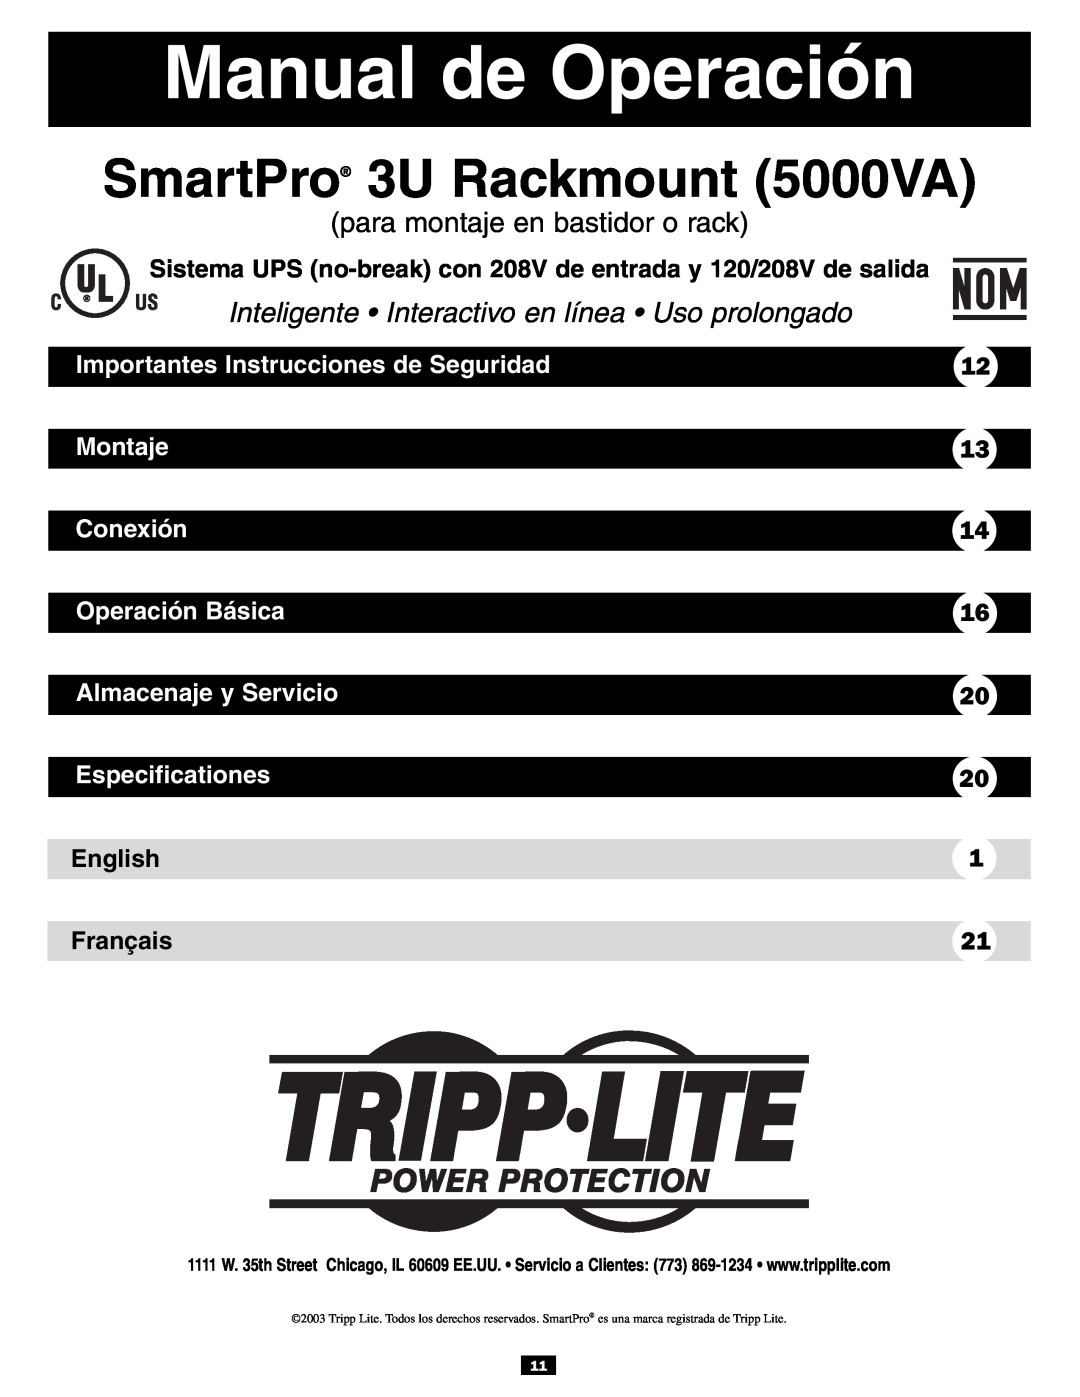 Tripp Lite 3U Manual de Operación, Importantes Instrucciones de Seguridad, Montaje, Conexión, Operación Básica, English 